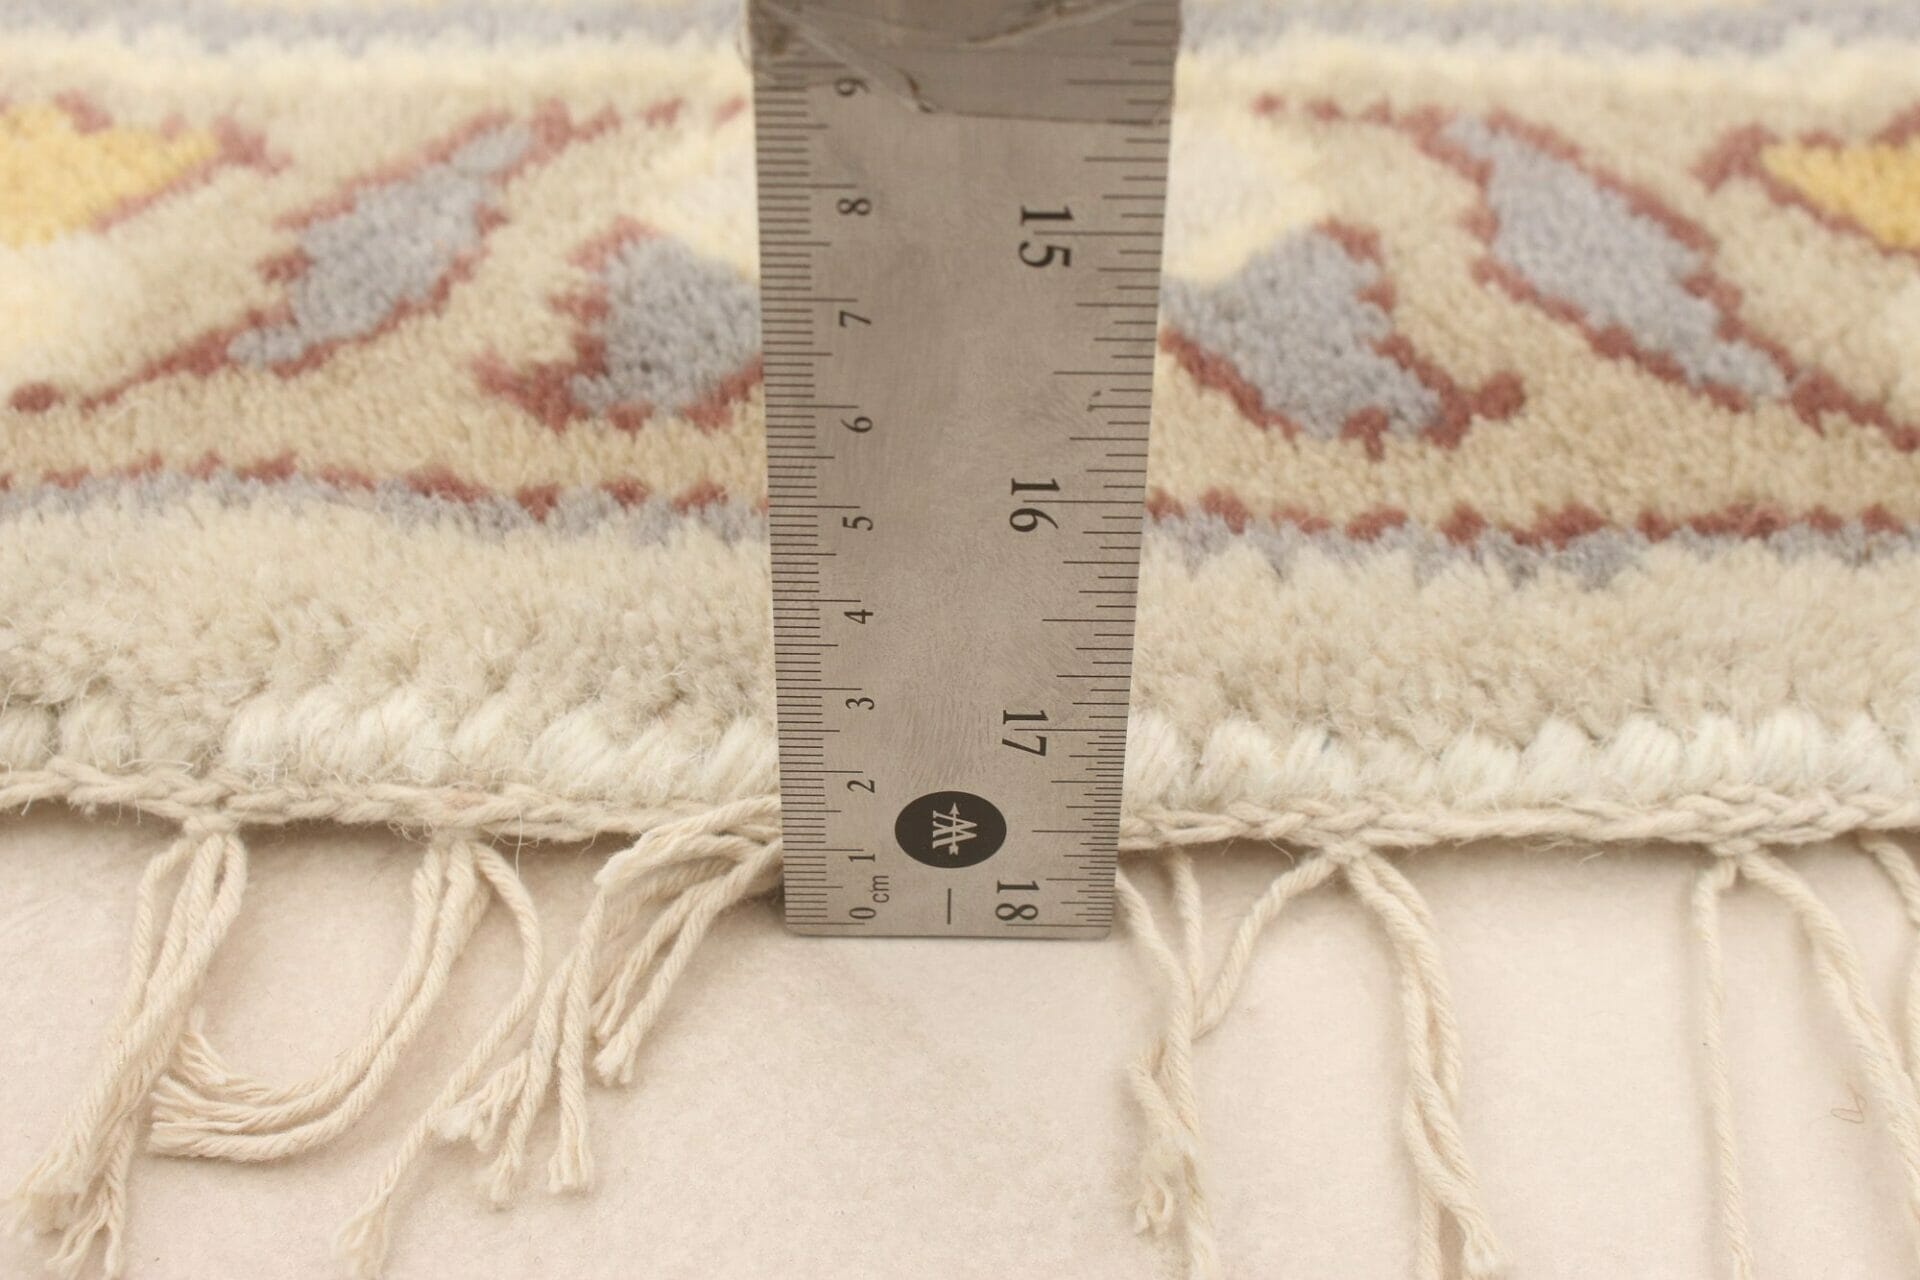 Een vloerkleed wordt gemeten met behulp van een liiaal.